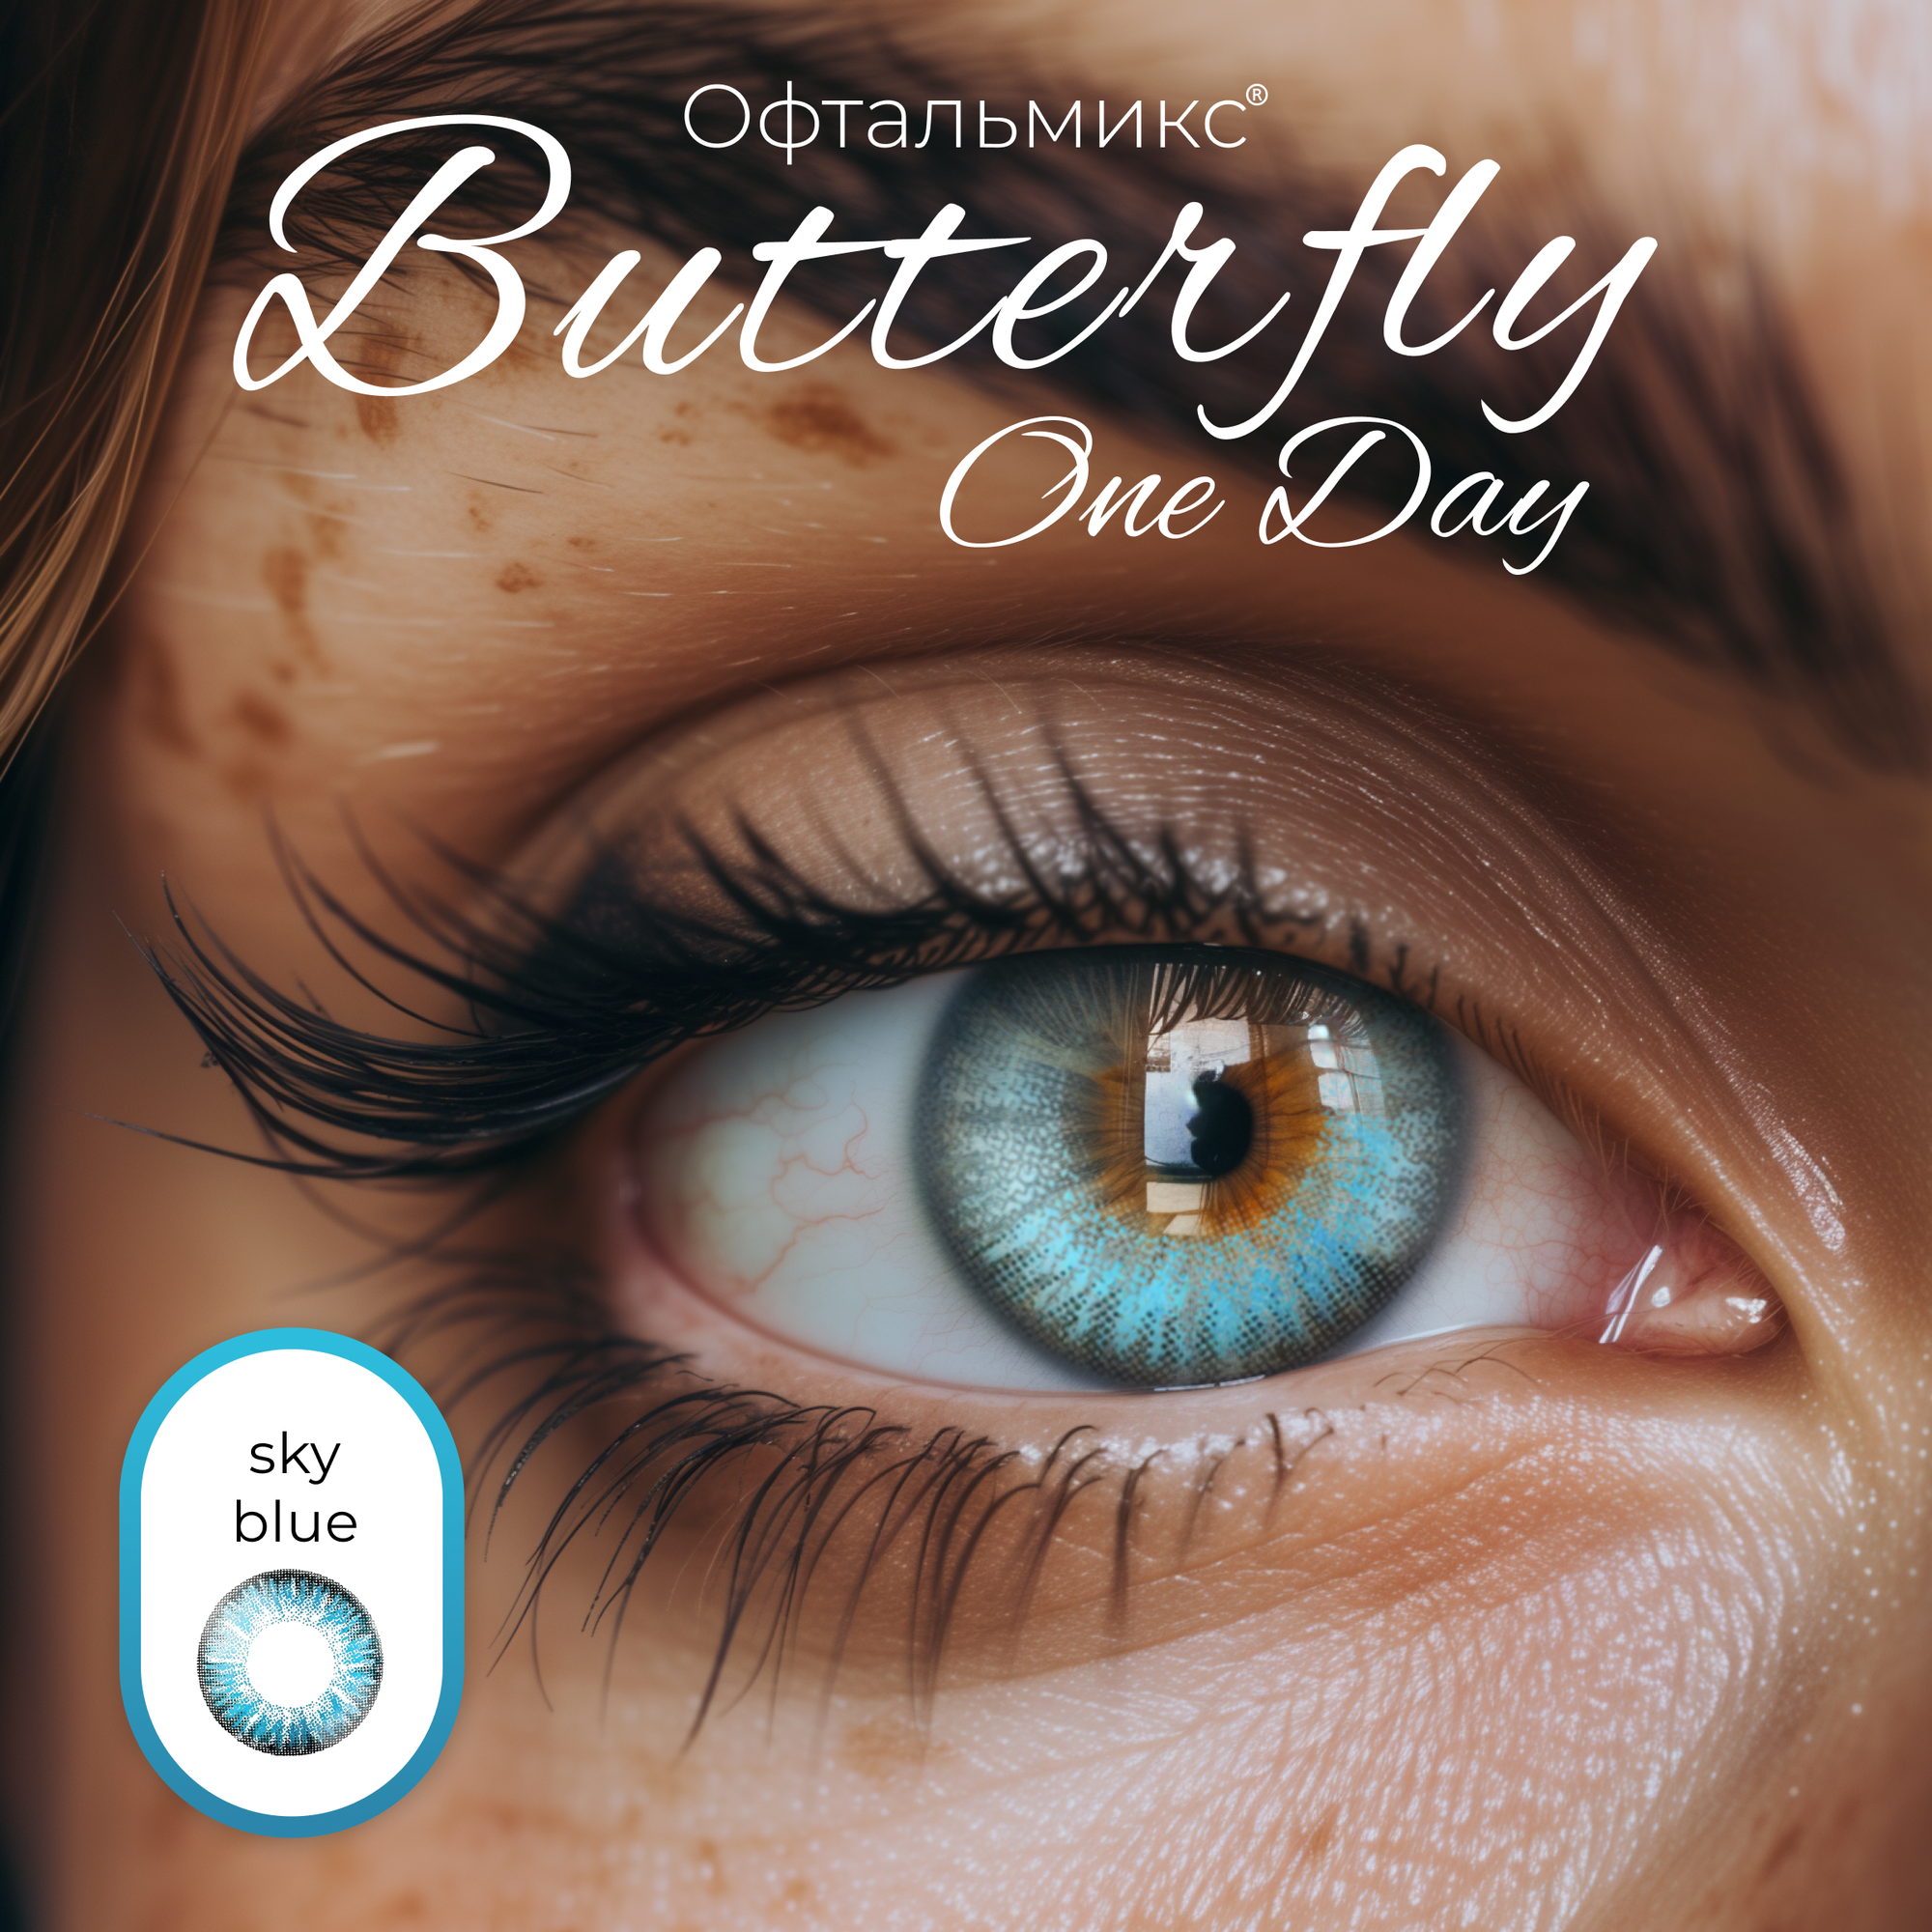 Цветные контактные линзы Офтальмикс Butterfly One Day (2 линзы) -6.50 R 8.6 Sky Blue (Голубой)